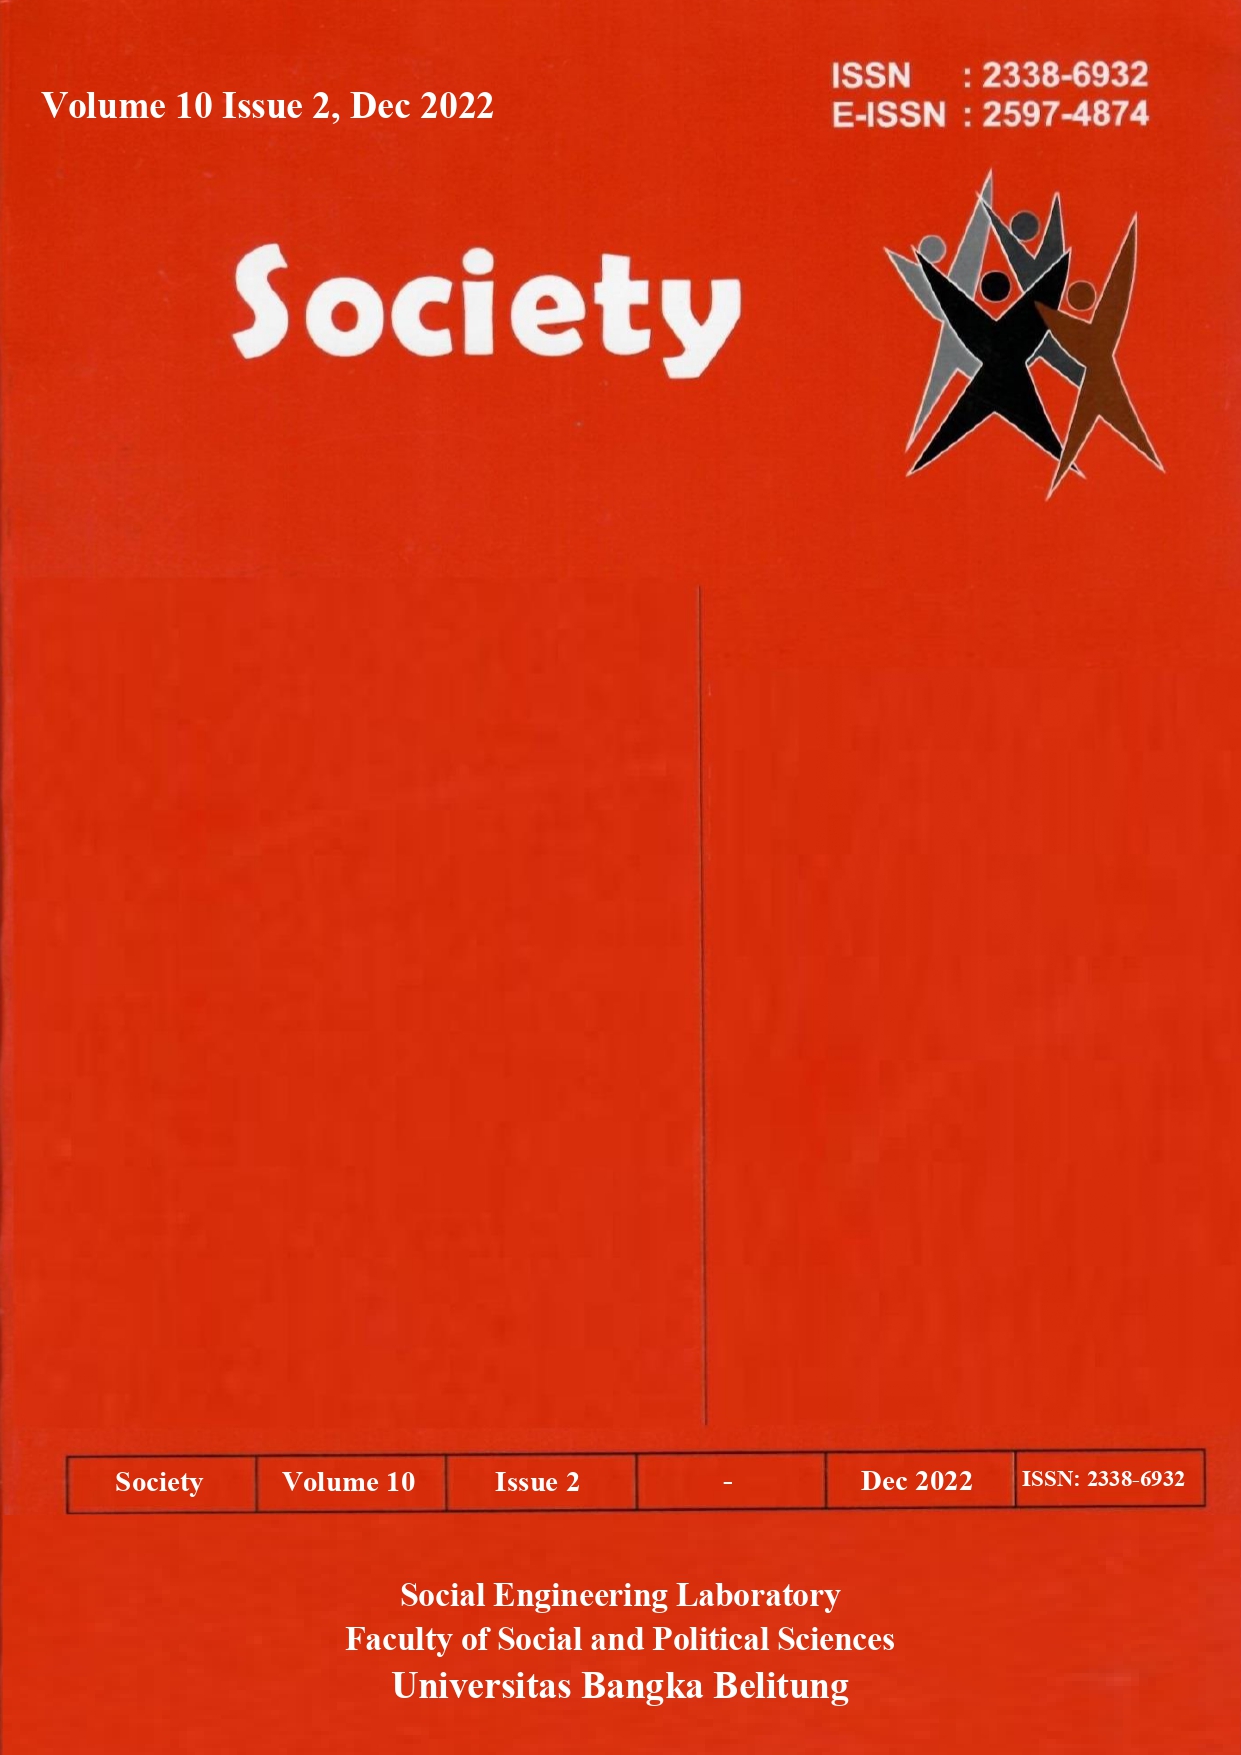 Society Volume 10 Issue 2#2022